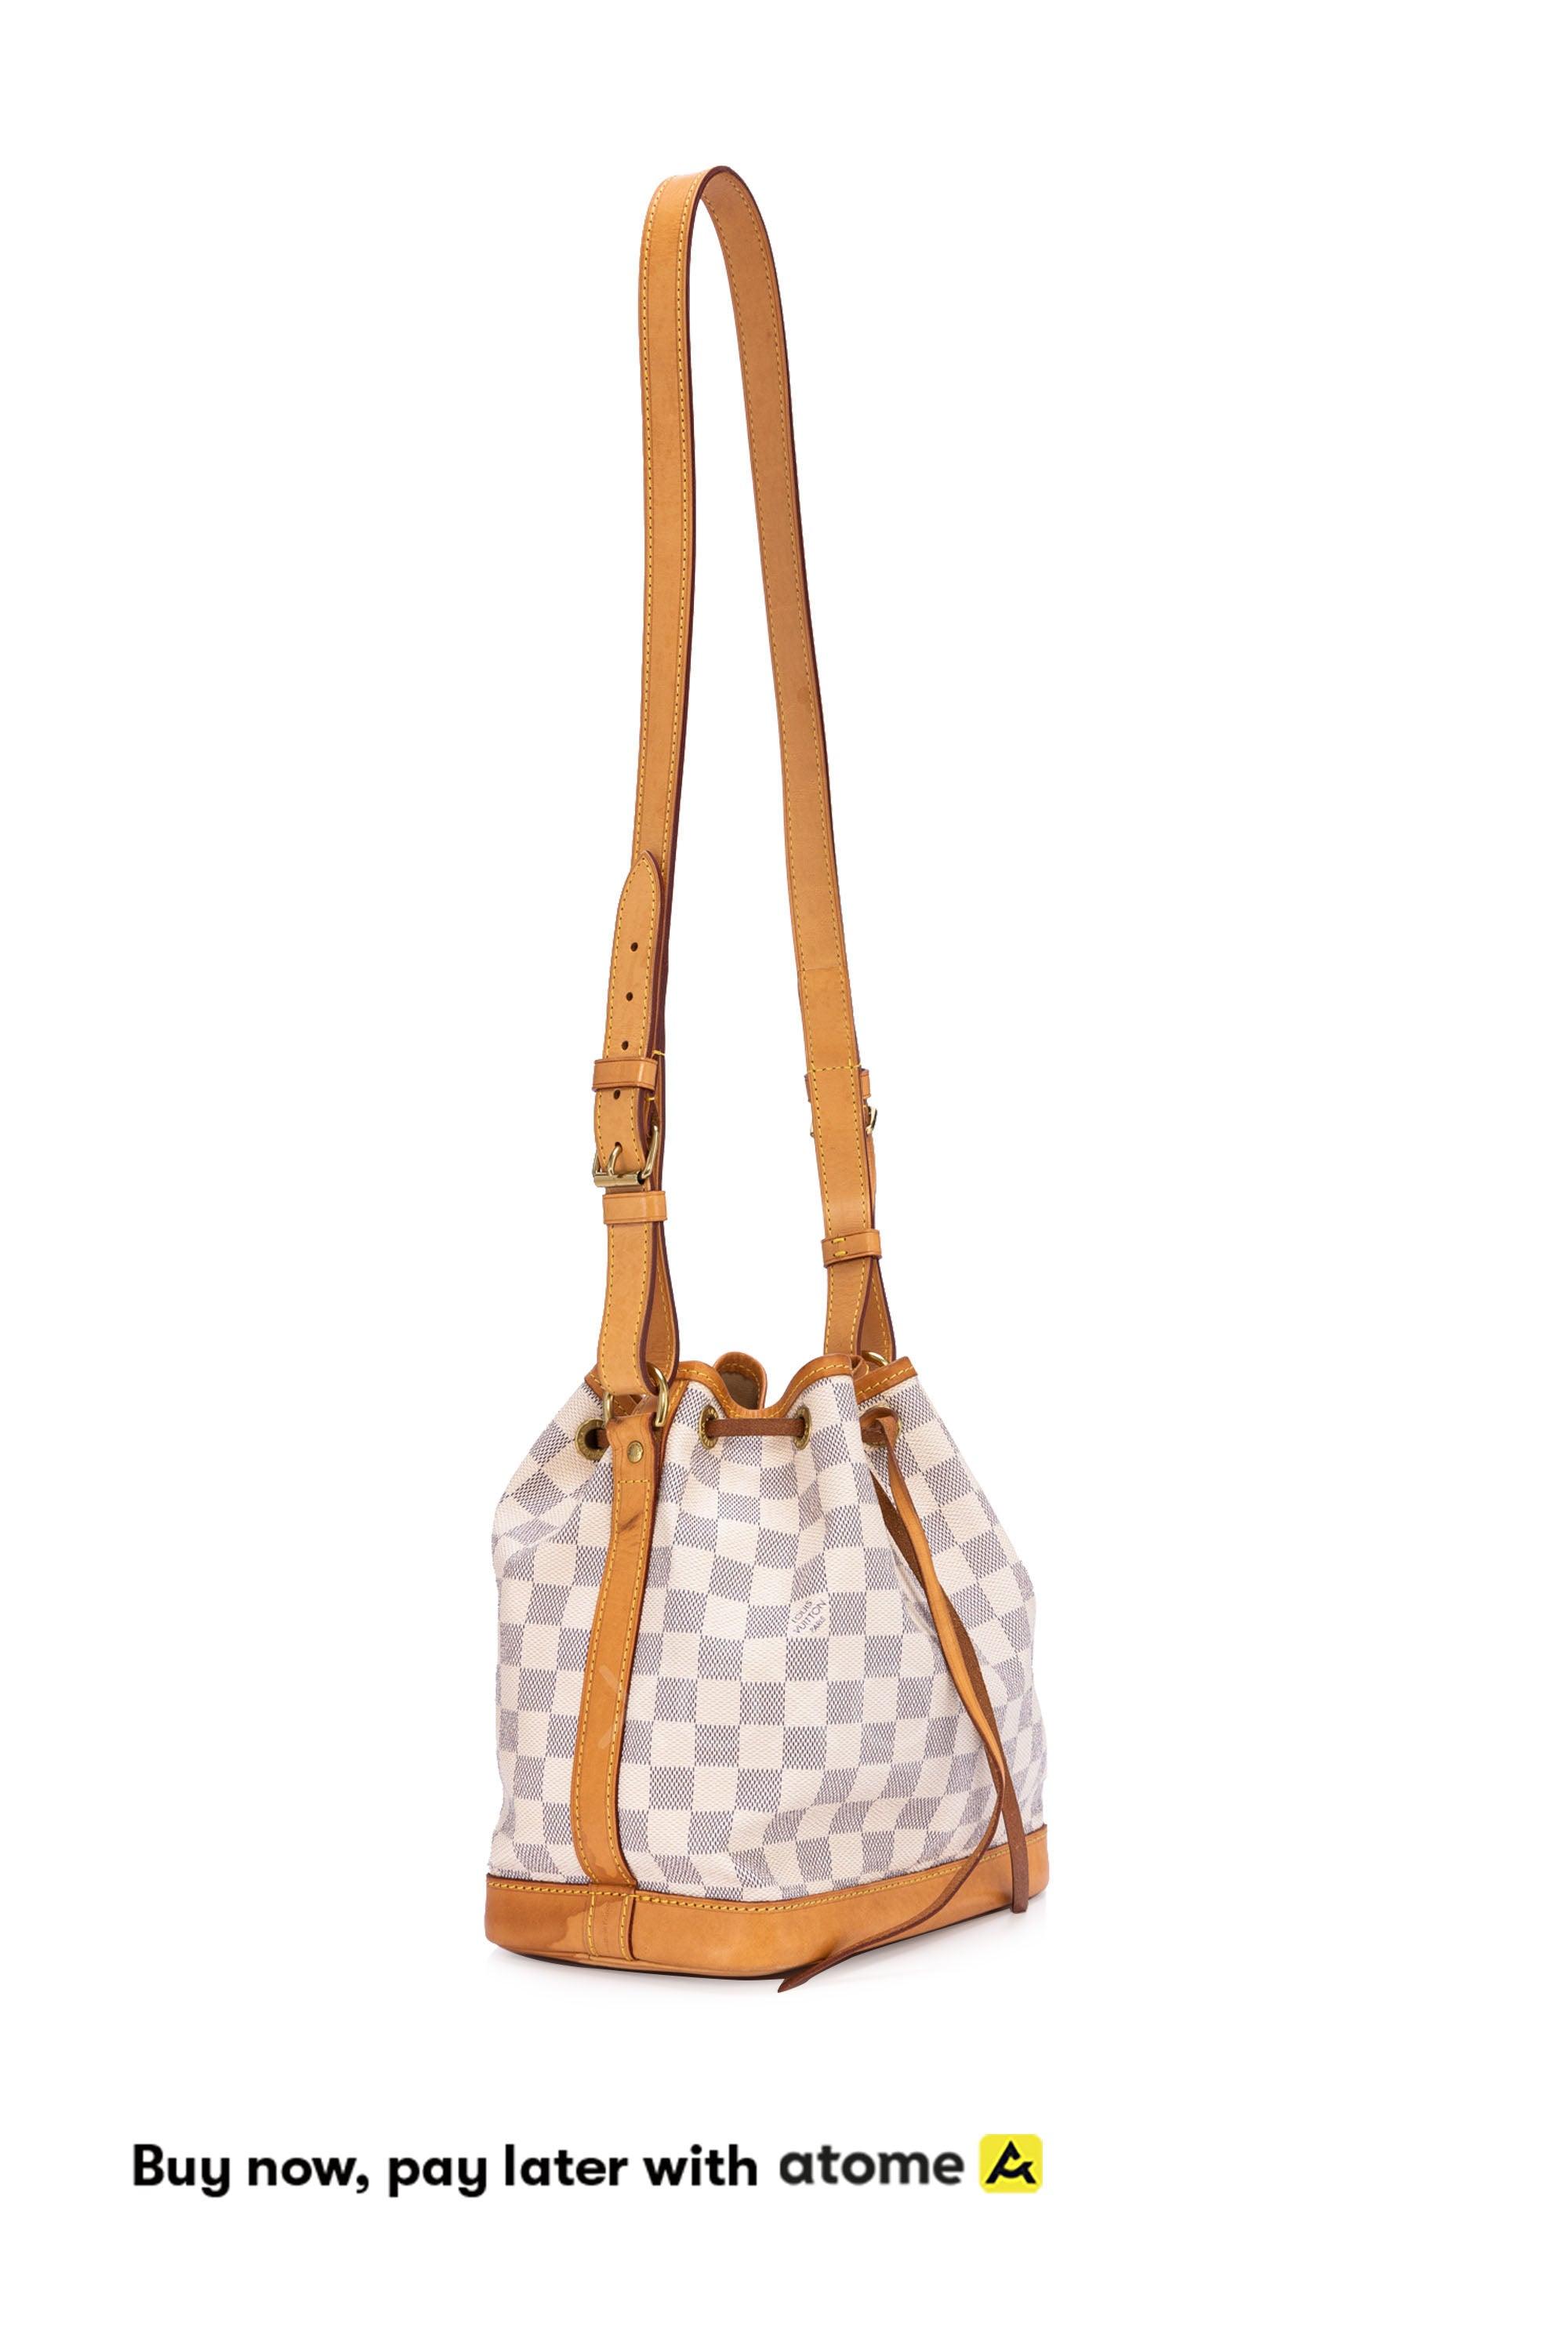 Louis Vuitton Monogram Canvas Noe BB Bucket Bag – Siopaella